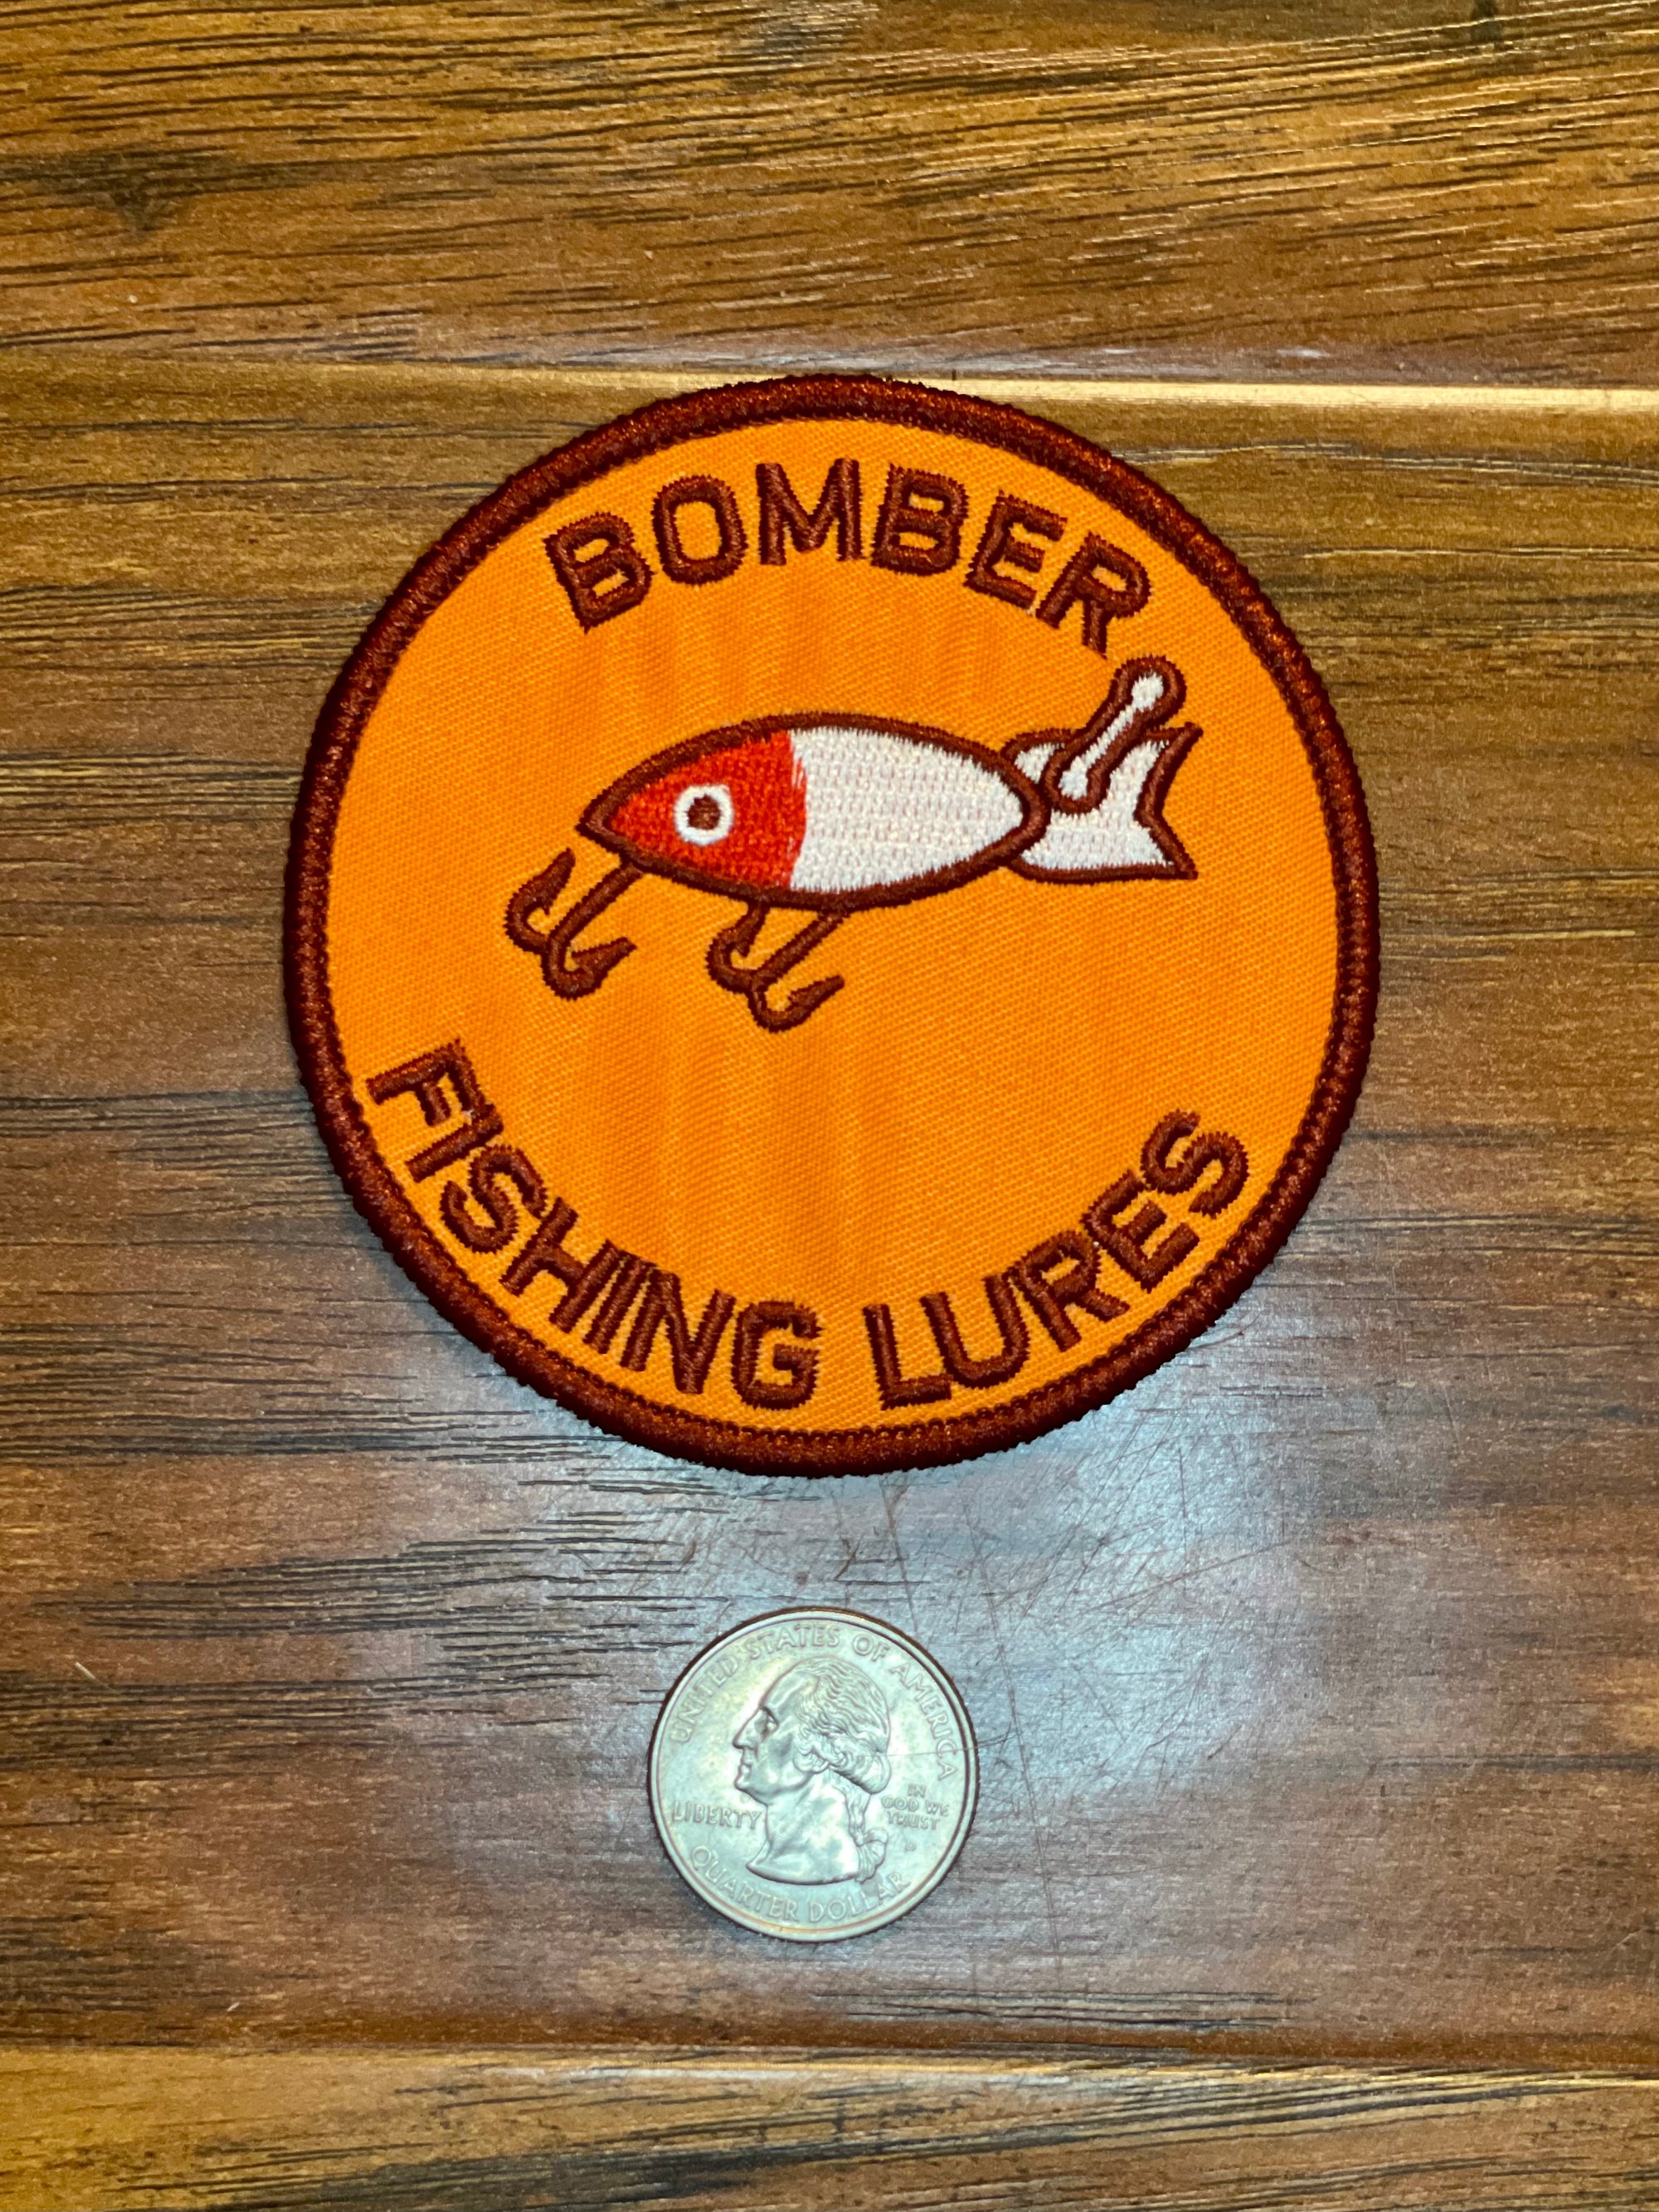 Bomber Fishing Lures, Fish, Rods, Lake, Water